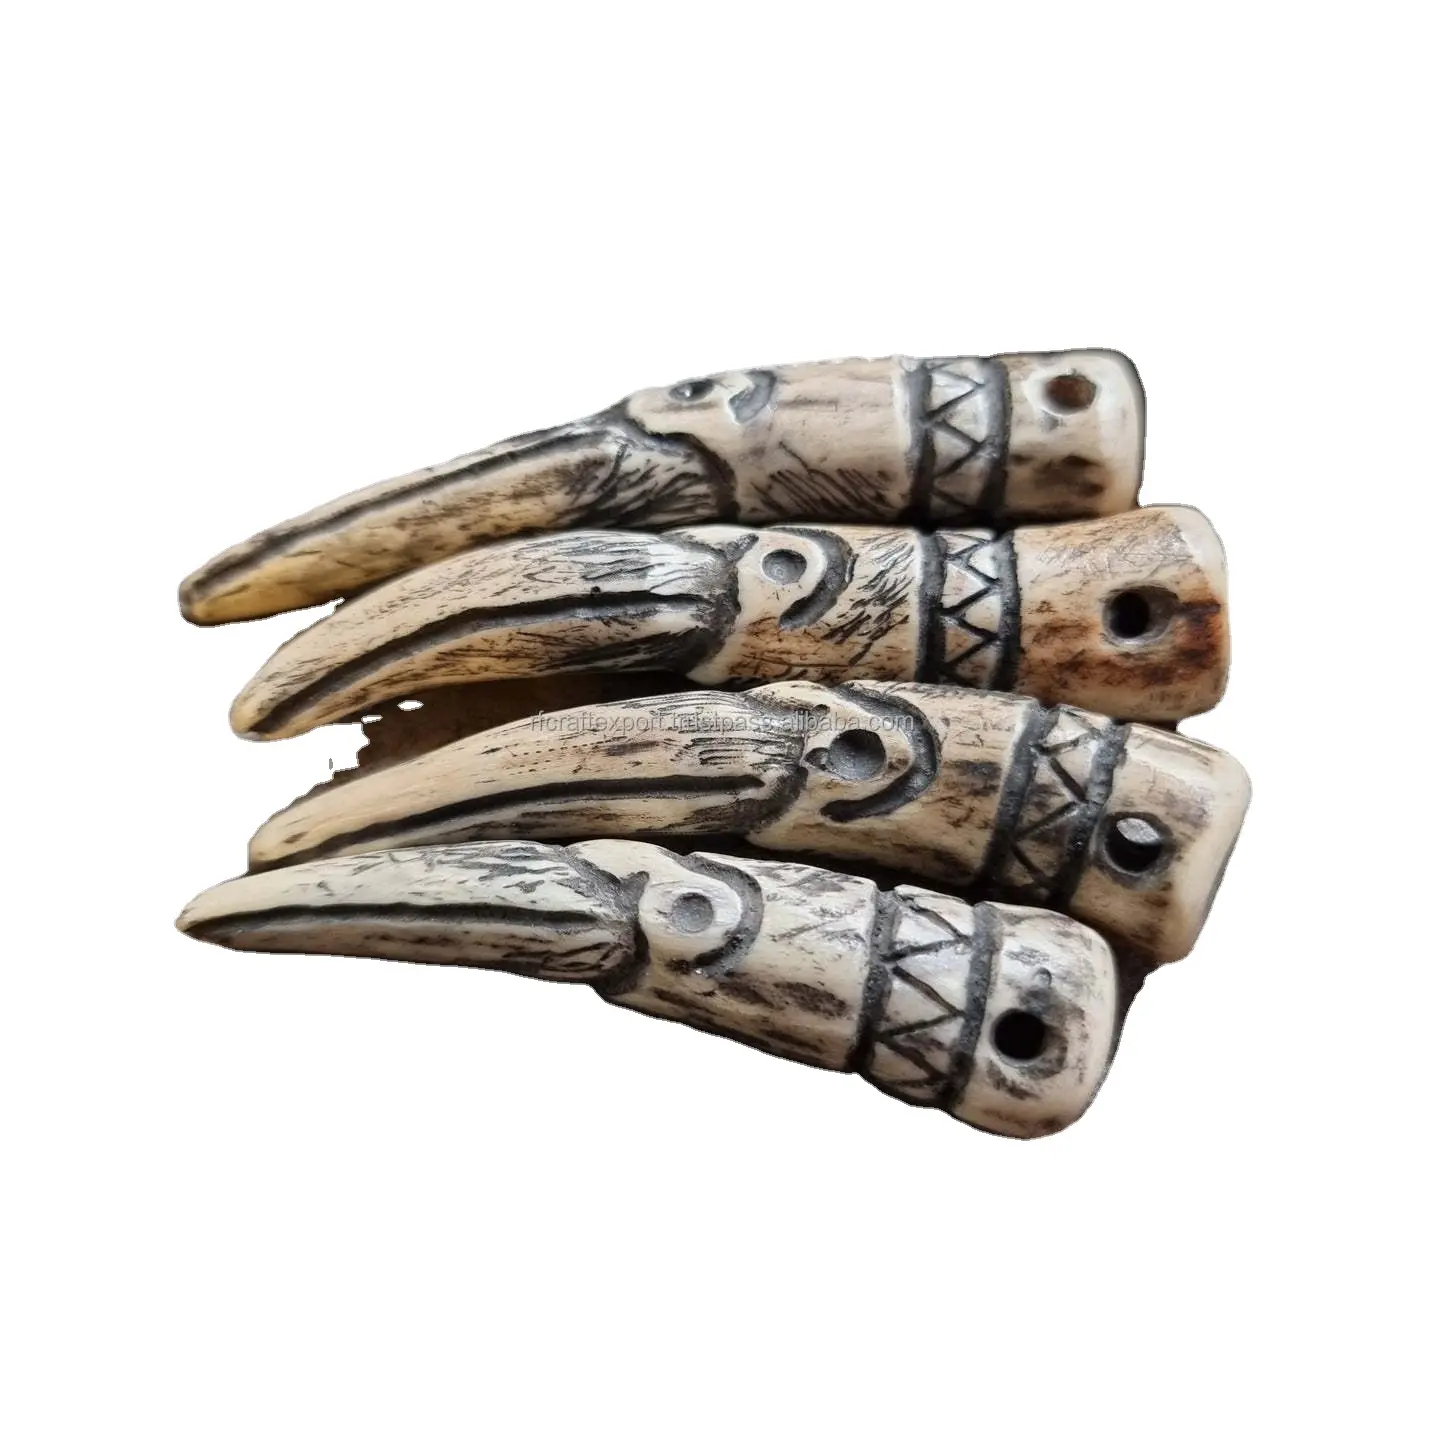 Ciondolo forgiato a mano per uomo antico corno d'osso ispirato a denti di elefante vichingo/norreno/celtico/medievale